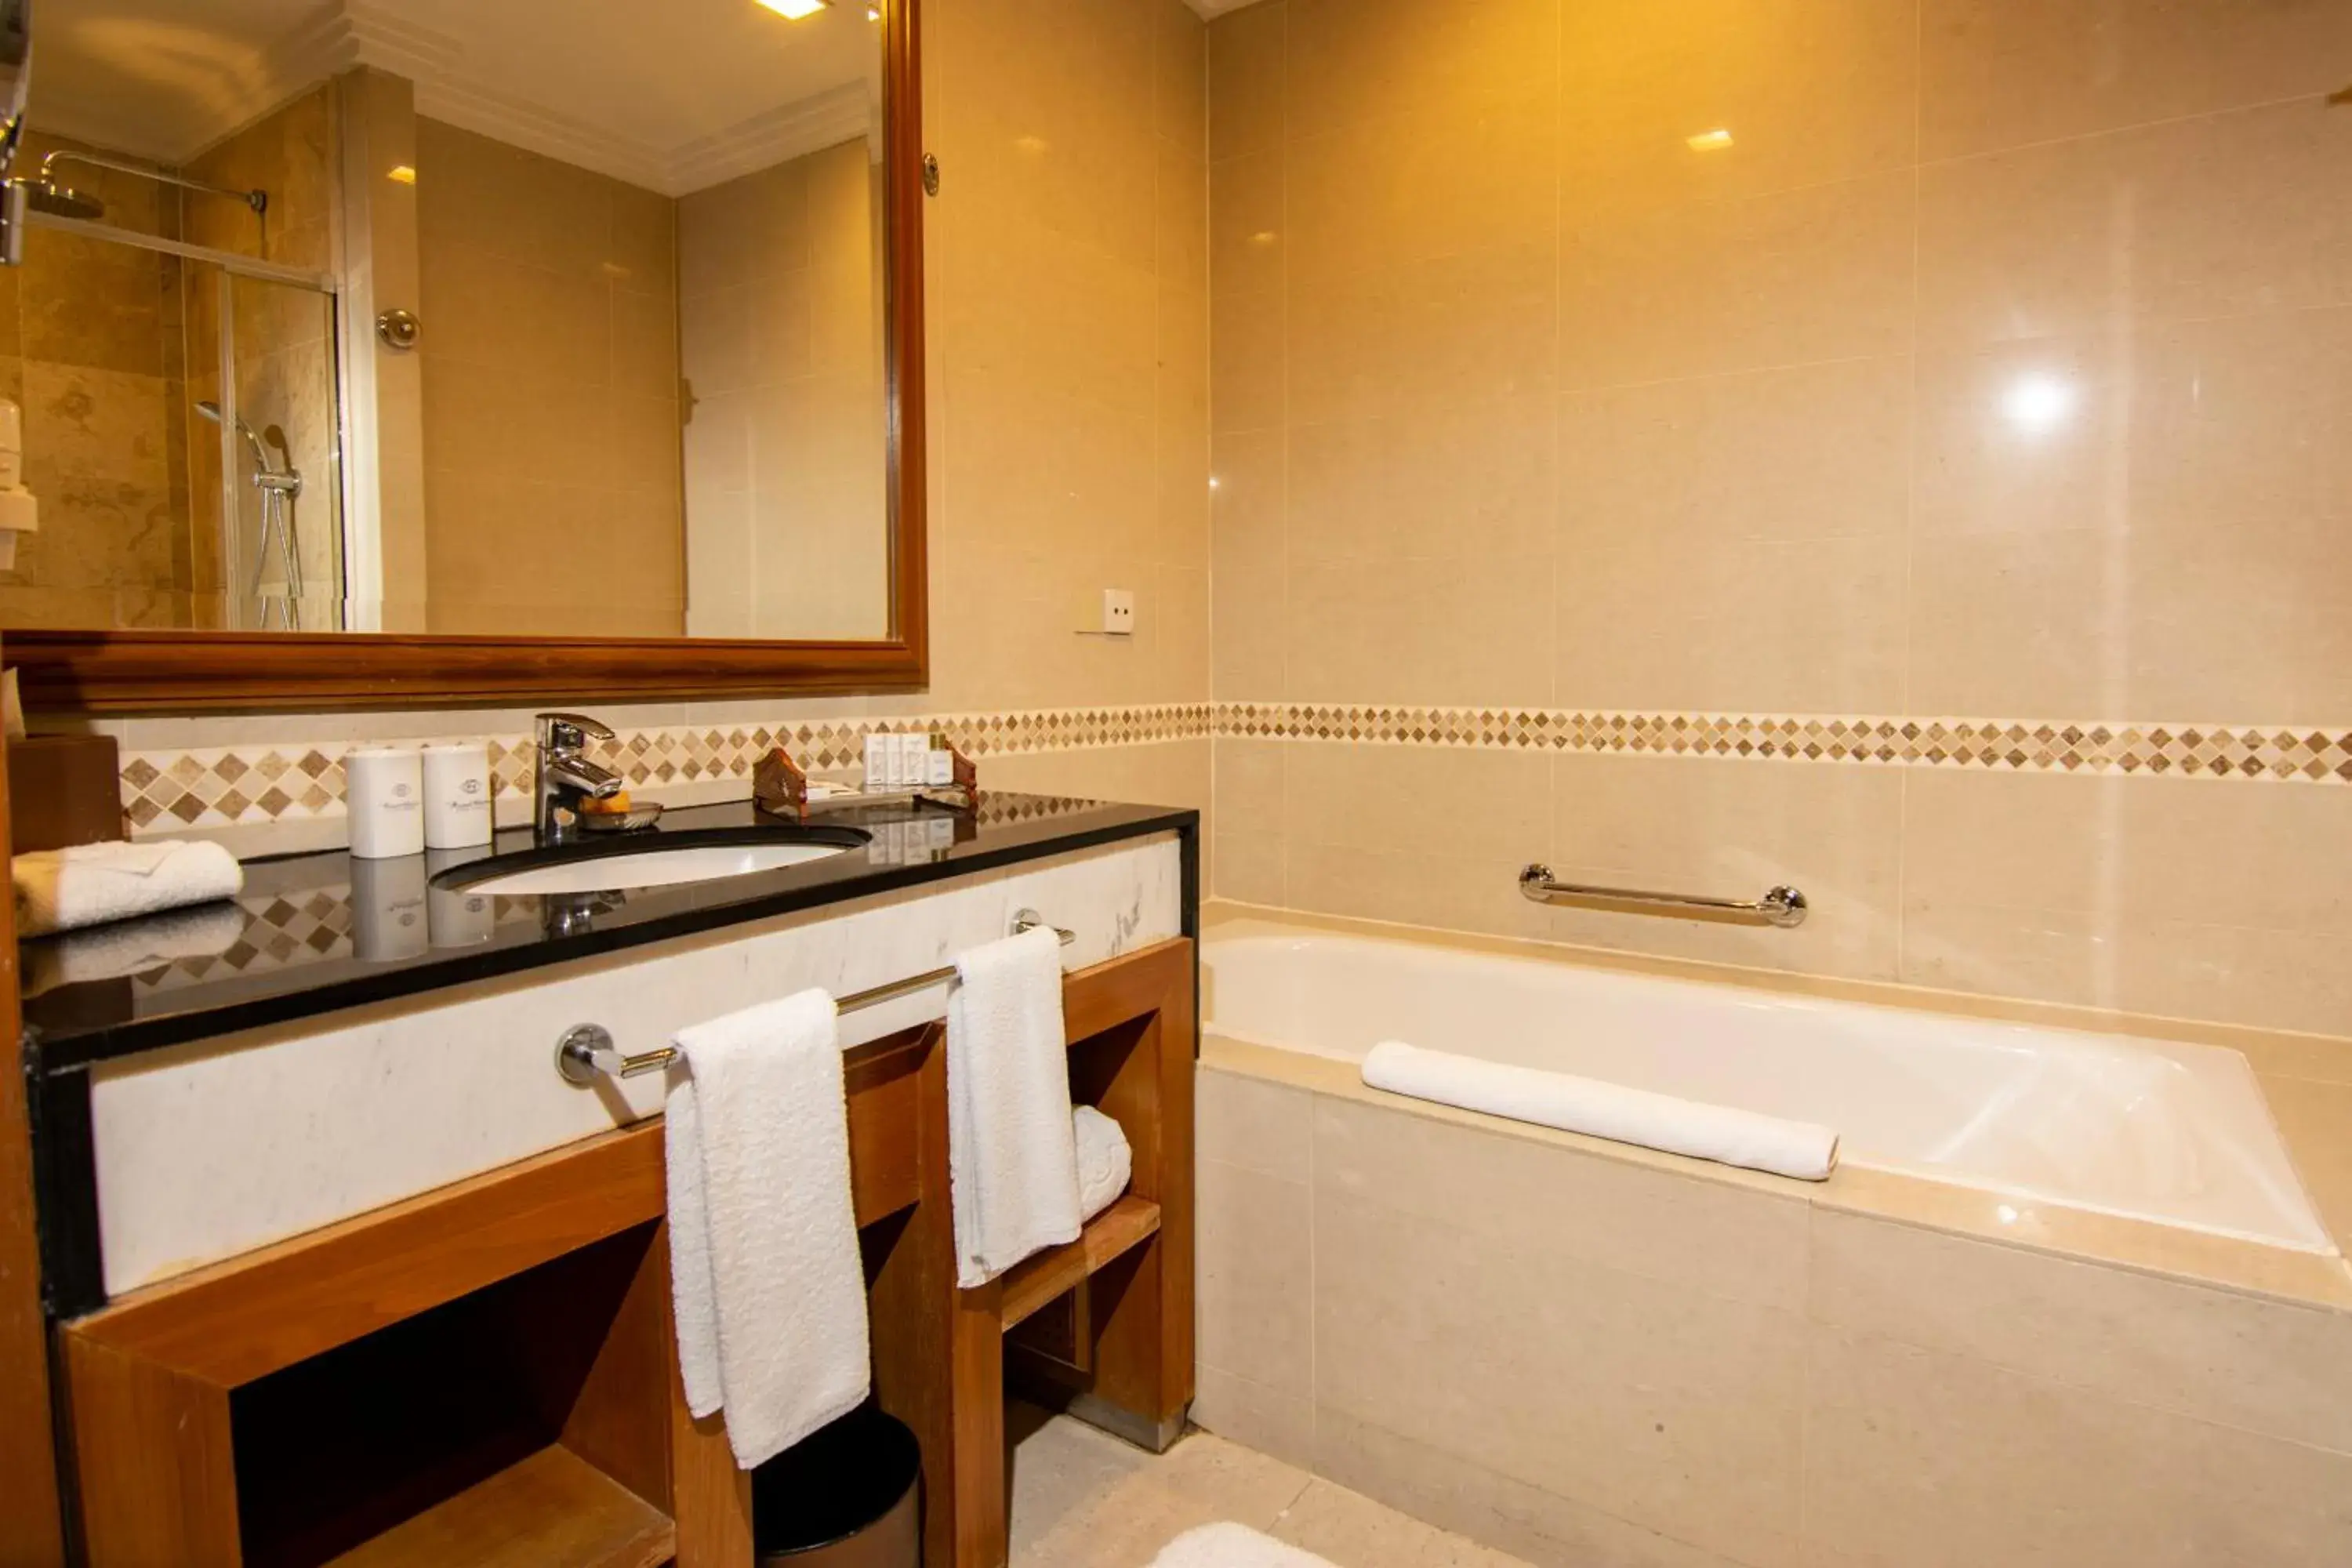 Bathroom in Royale Chulan Kuala Lumpur